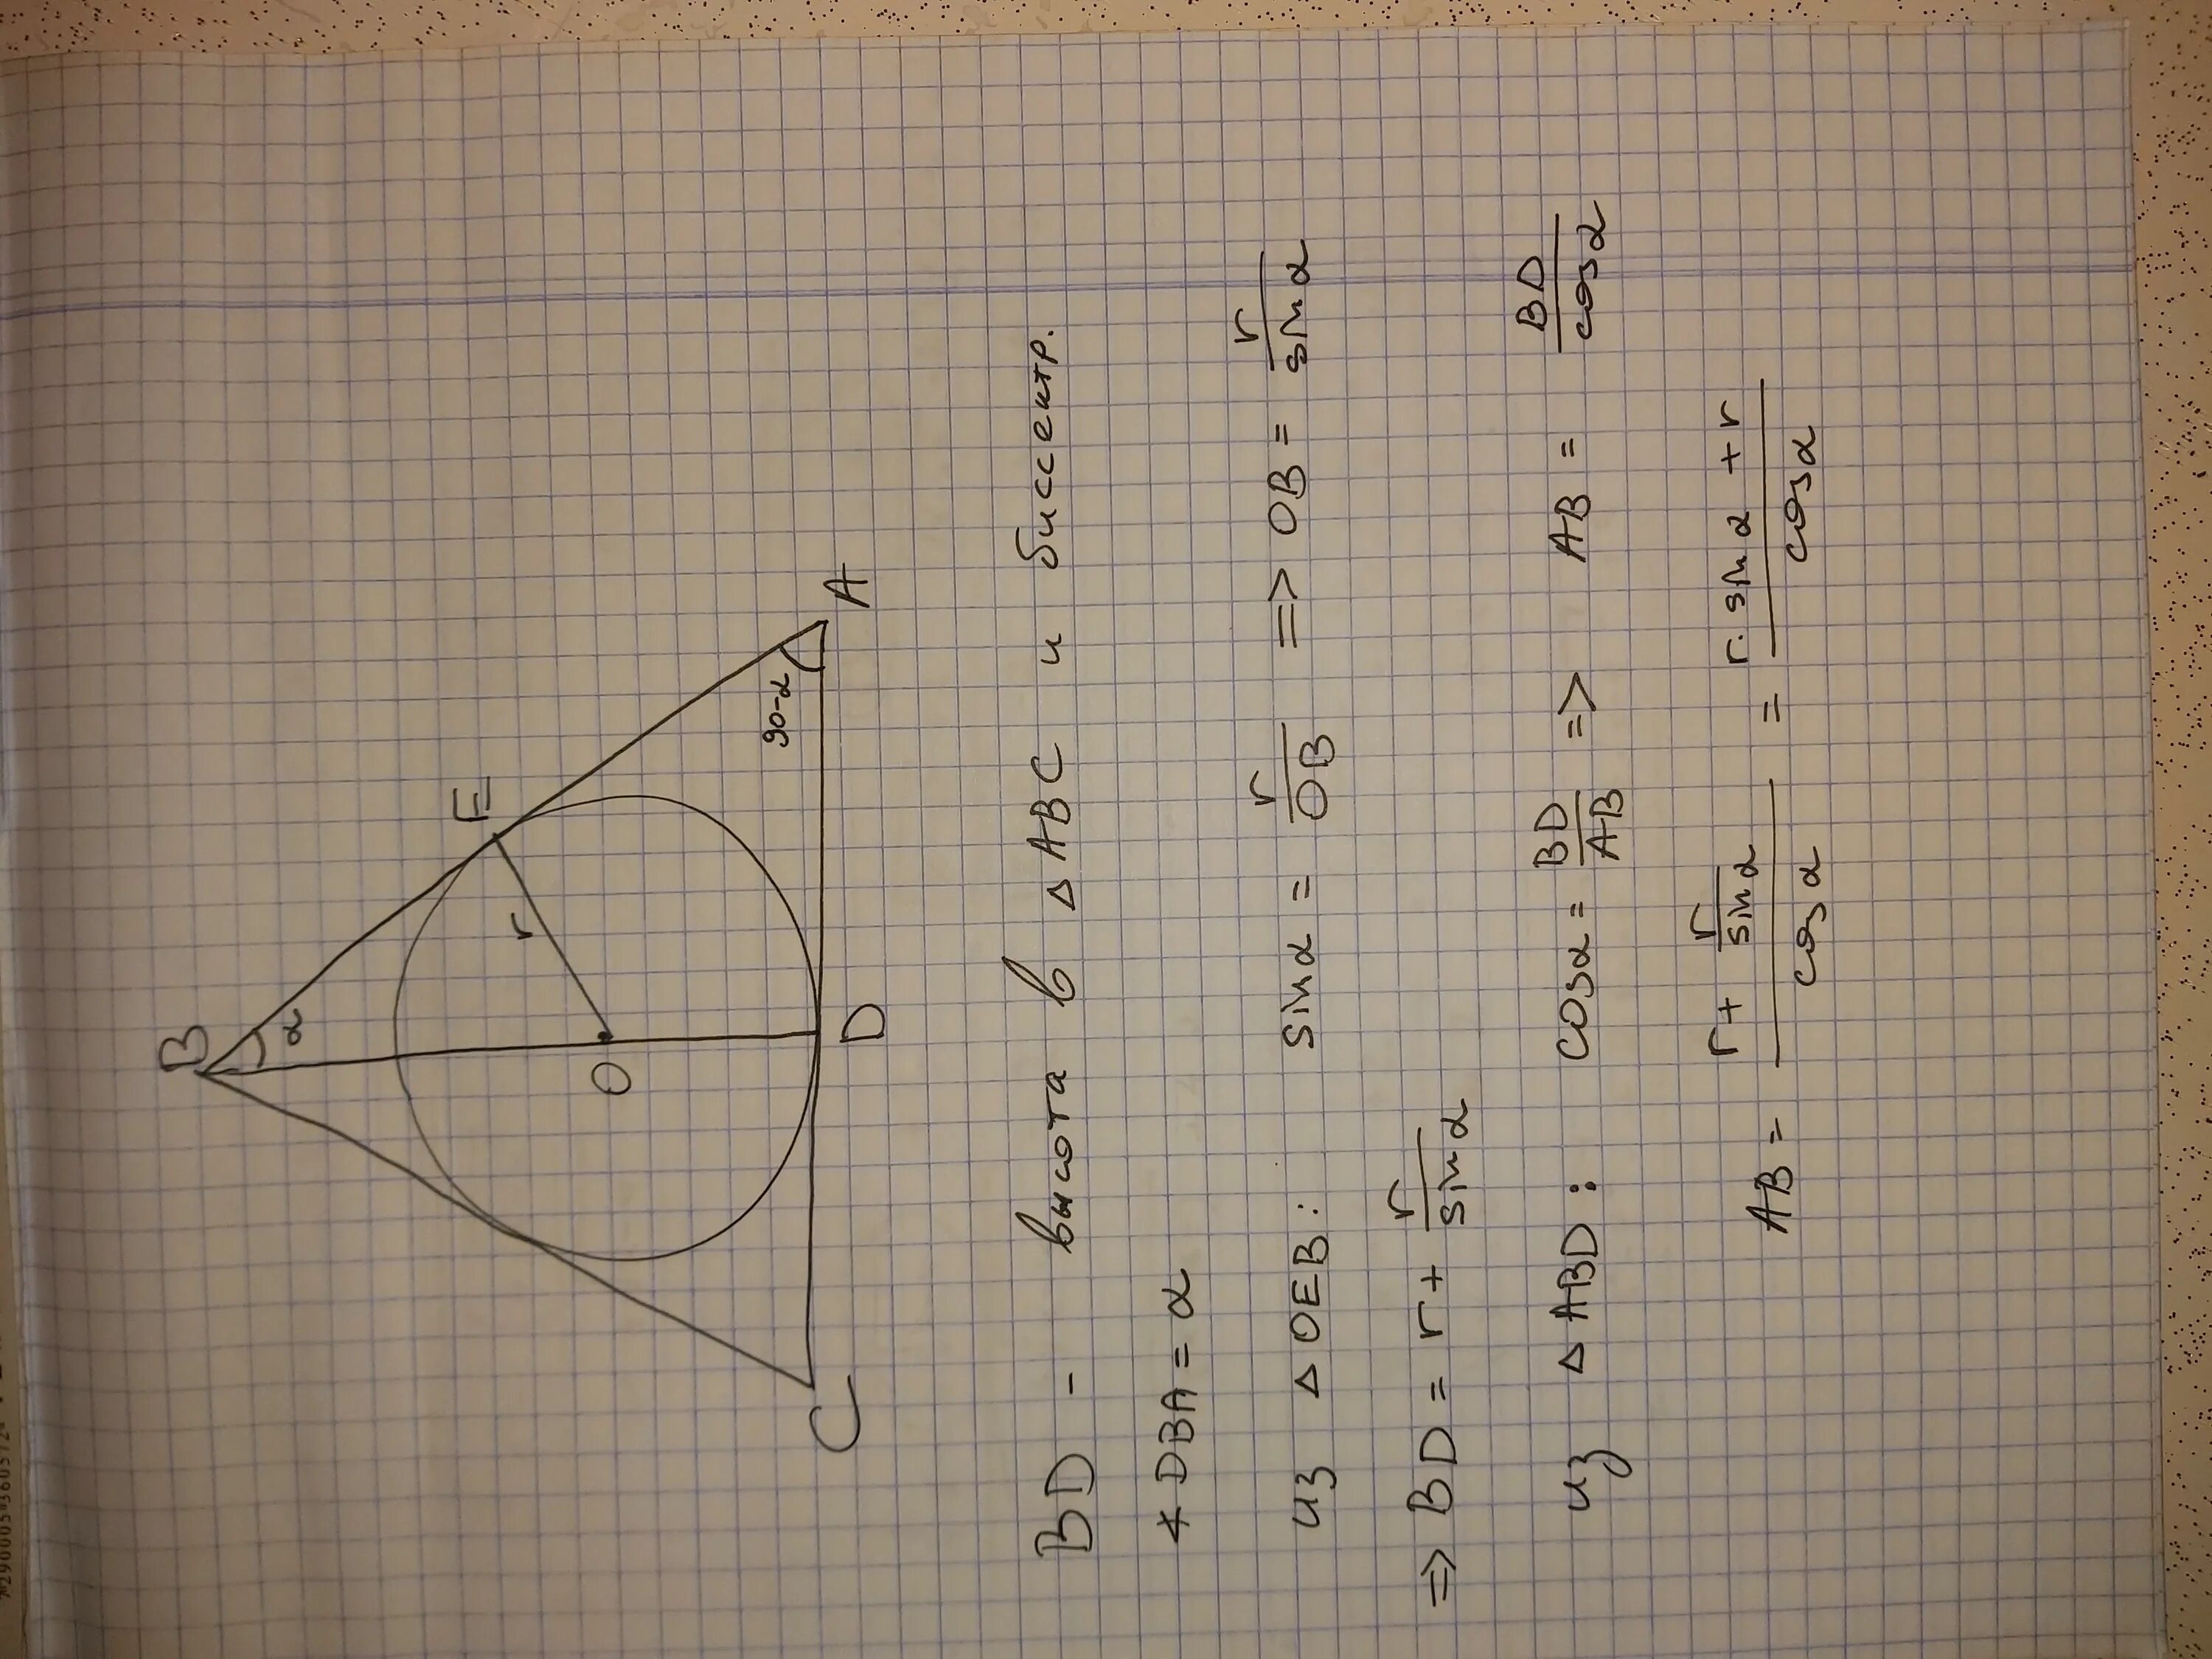 Угол при вершине равнобедренного треугольника равен 64. Боковая сторона равнобедренного треугольника 4 угол при вершине 120. Треугольник с увеличенным углом при вершине пластина.